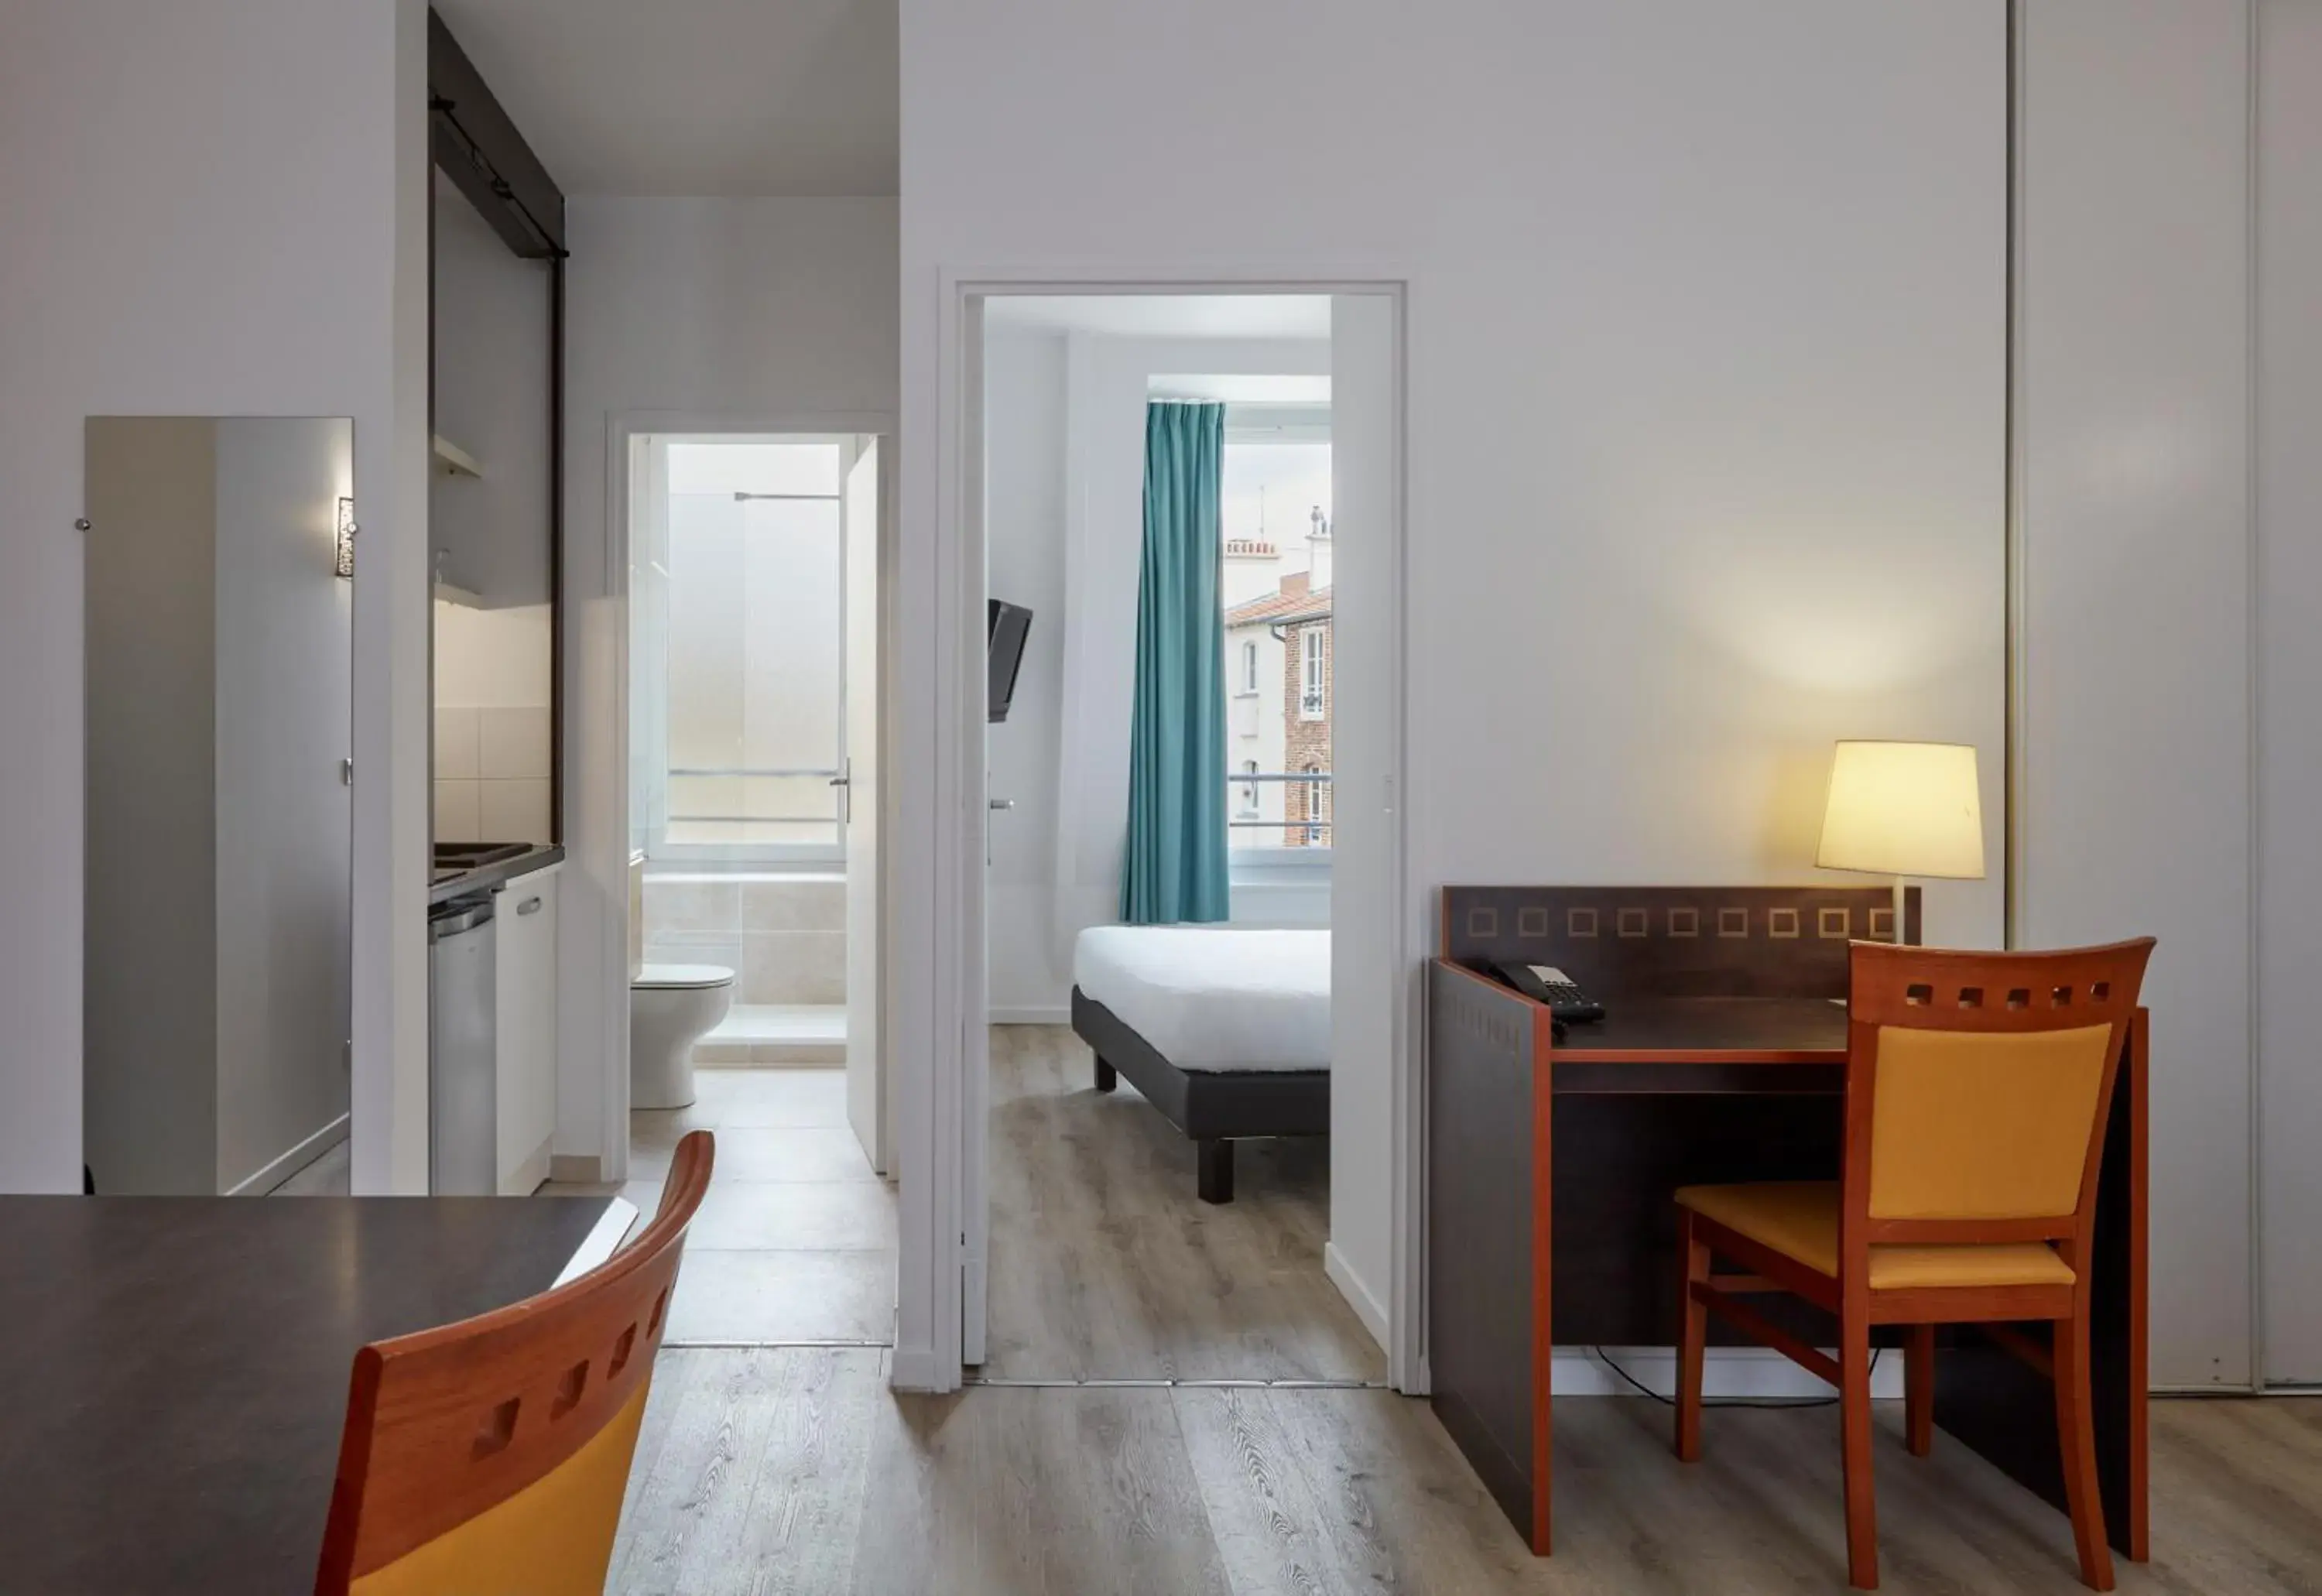 Bedroom, Dining Area in Aparthotel Adagio Access Paris Philippe Auguste